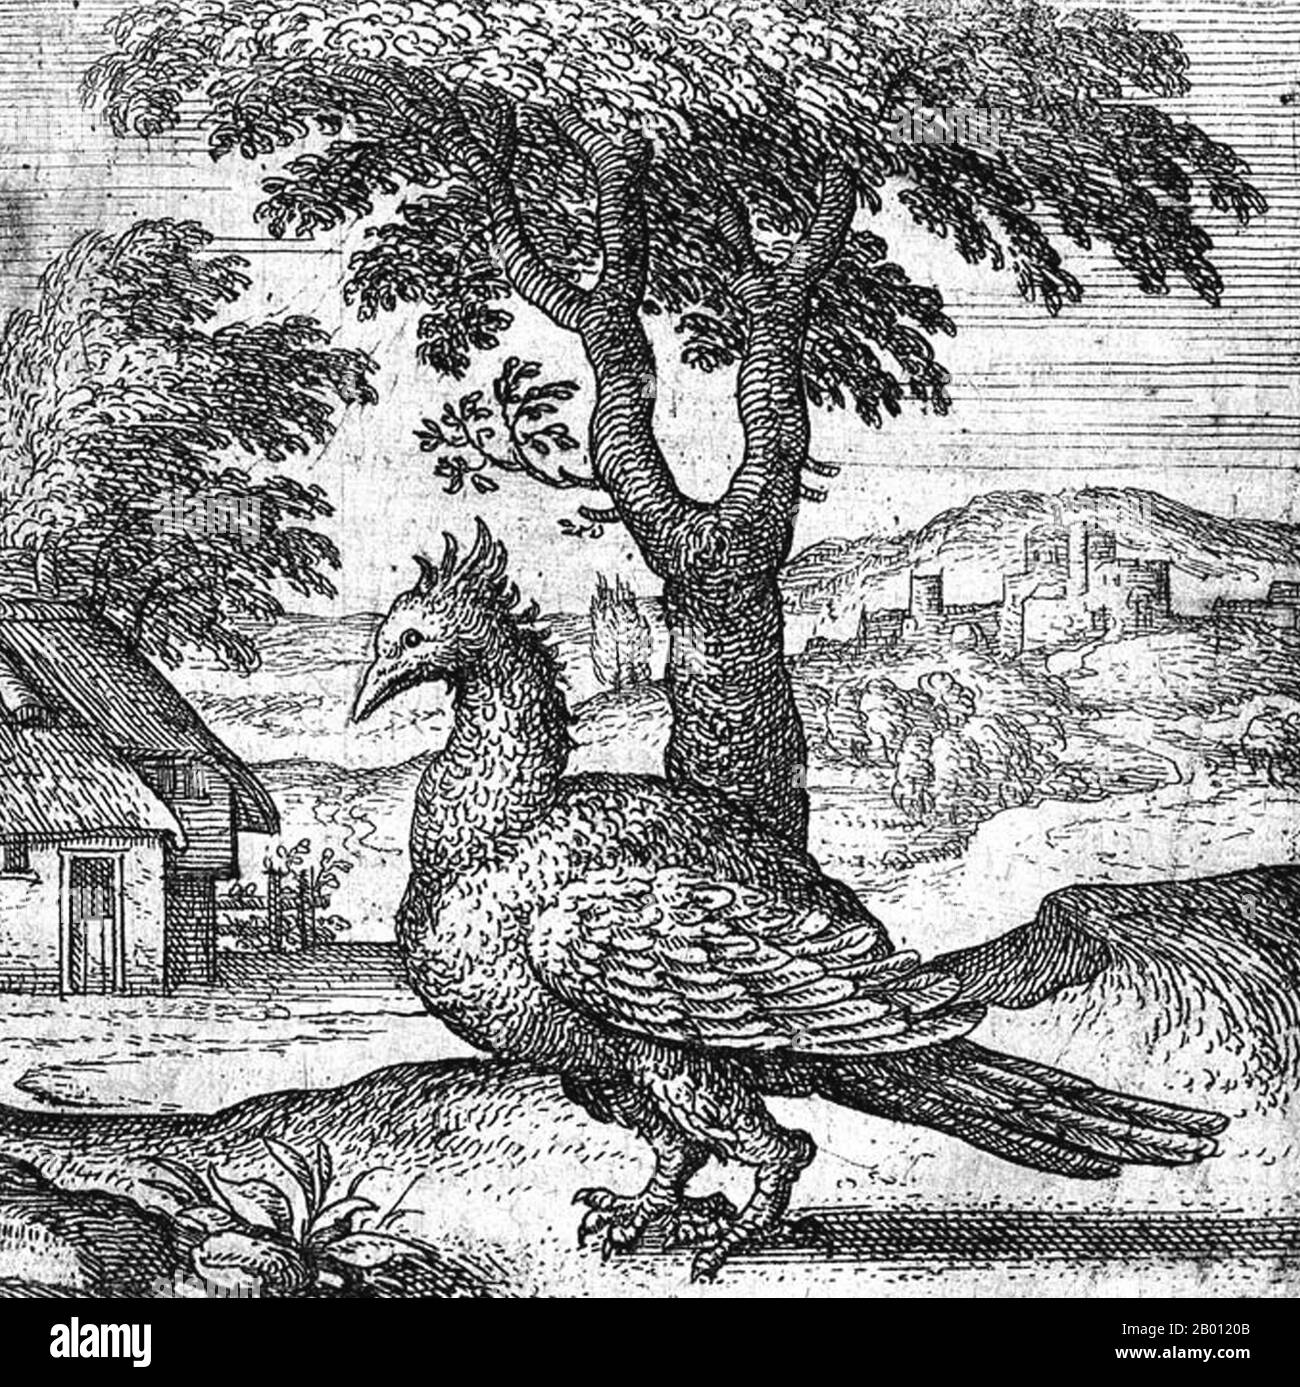 Mitología: un fénix representado en un grabado de copperplate de Pieter van der Borcht (1530-1608), 1591. el fénix es un mítico ave de fuego sagrada que se puede encontrar en las mitologías de los persas, griegos, romanos, egipcios, chinos, Y (según Sanchuniathon) fenicios. Un fénix es un pájaro mítico que es un espíritu de fuego con un plumaje colorido y una cola de oro y escarlata (o púrpura, azul y verde según algunas leyendas). Tiene un ciclo de vida de 500 a 1000 años, cerca del final del cual se construye un nido de ramitas que luego se enciende. El fénix es entonces renacido de las cenizas. Foto de stock